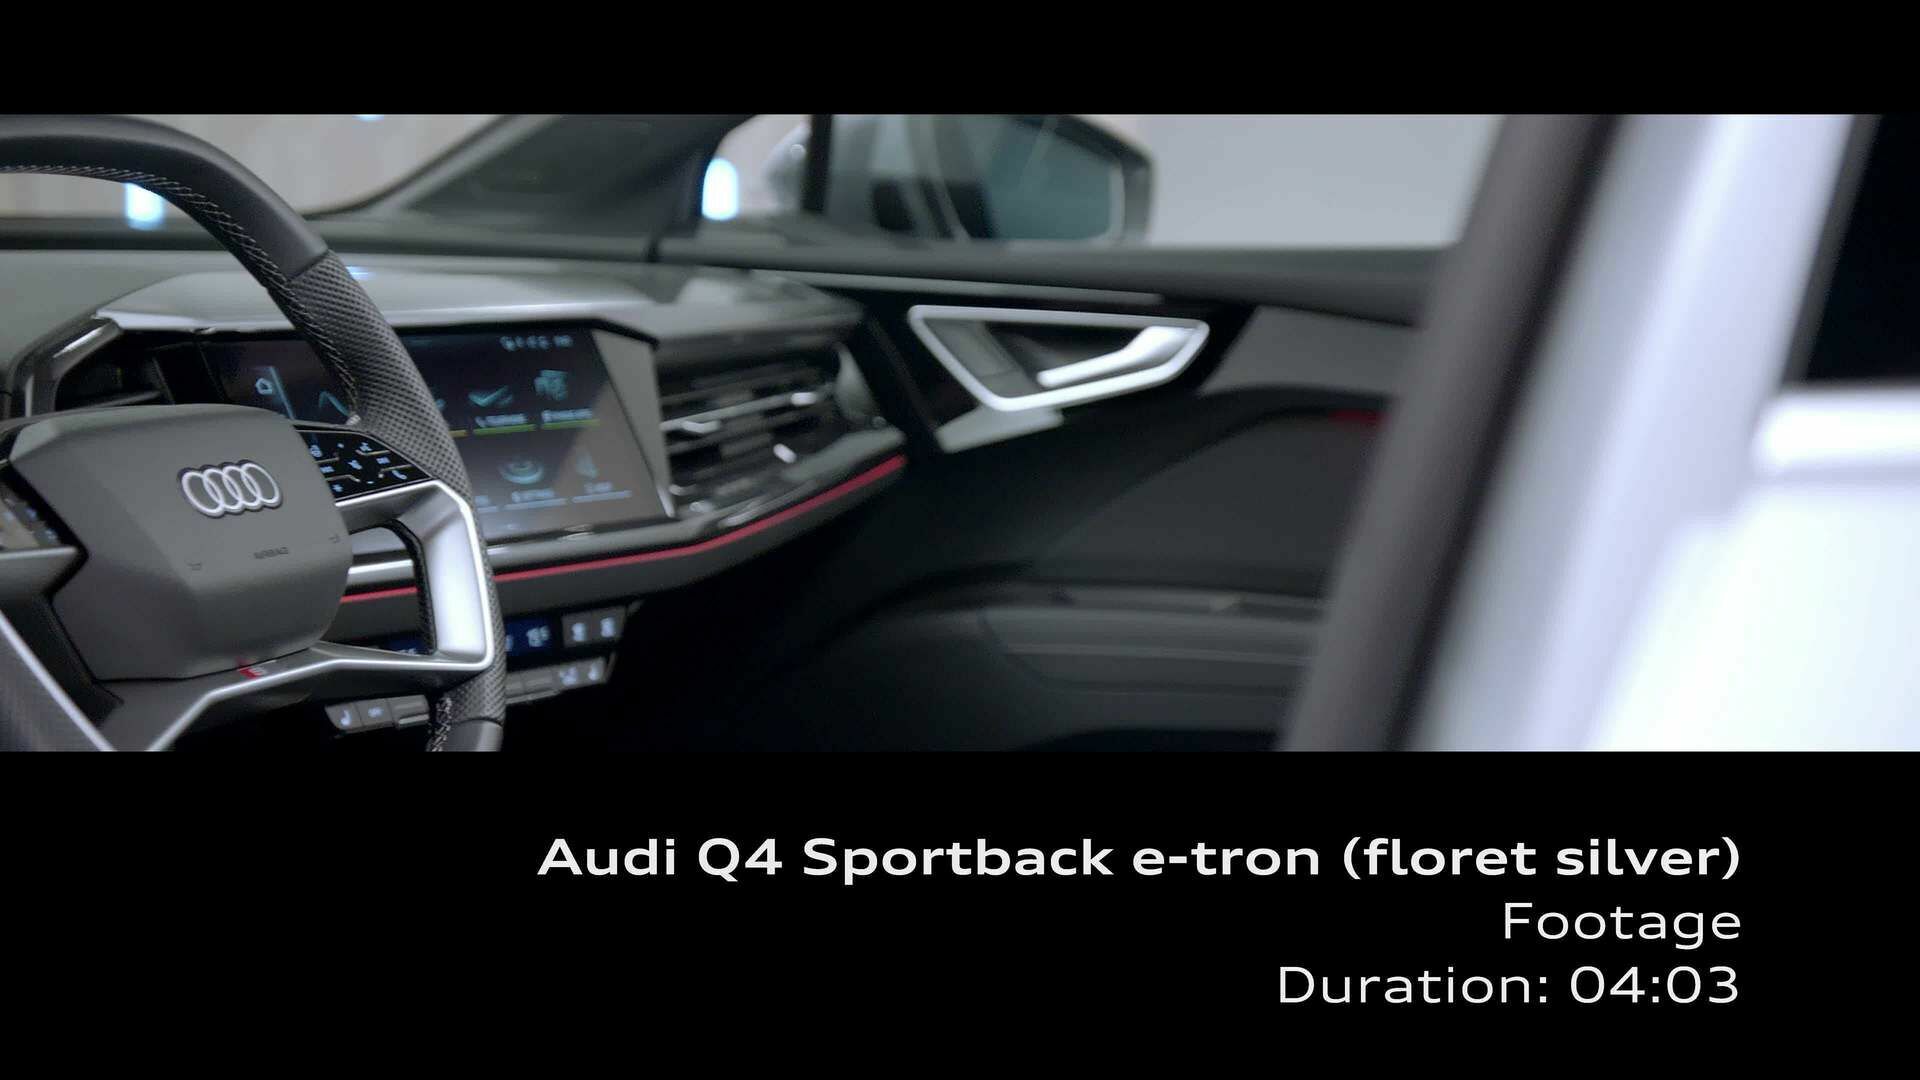 Footage: Audi Q4 Sportback e-tron – Interieur